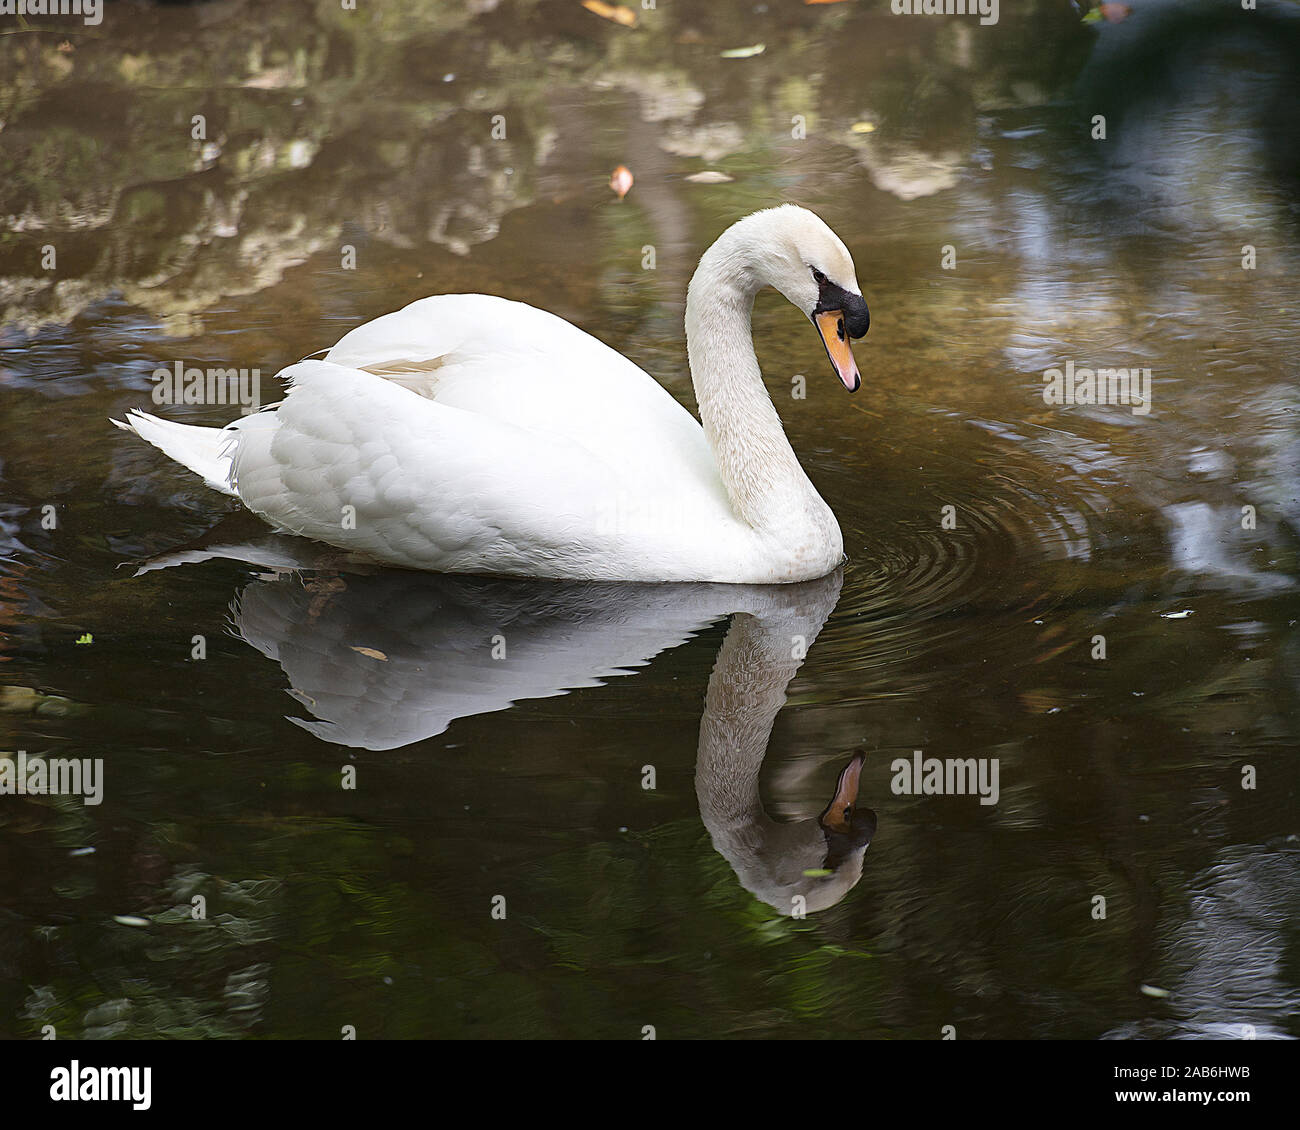 Il White Swan bird in acqua di esporre il suo corpo, la testa, il becco, occhio, diffondere le ali con un riflesso. Foto Stock